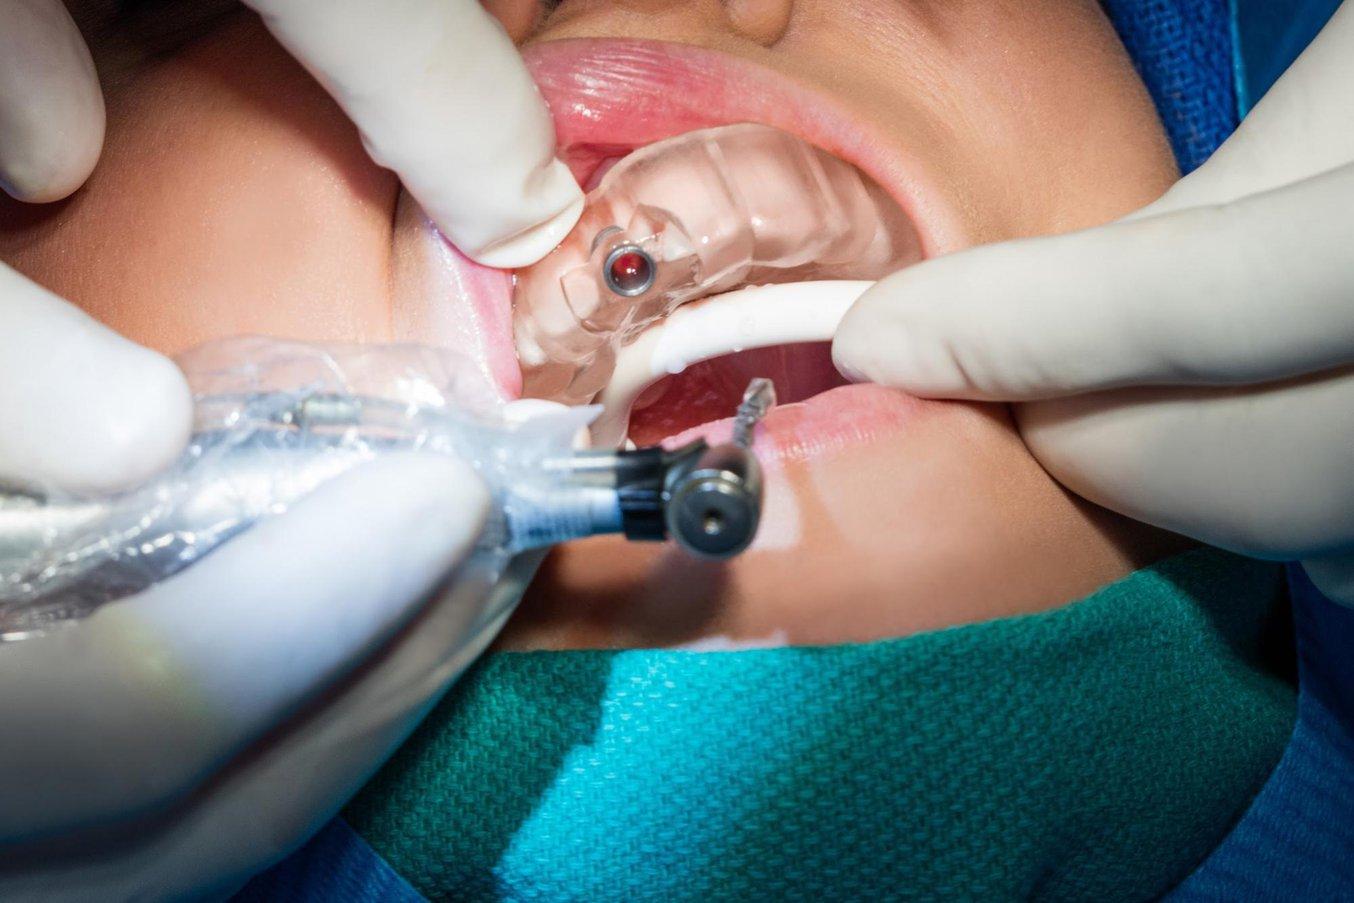 Las guías quirúrgicas impresas en 3D permiten que los implantes se coloquen de manera rápida y con gran precisión por tan solo 2-6 € por cada guía.